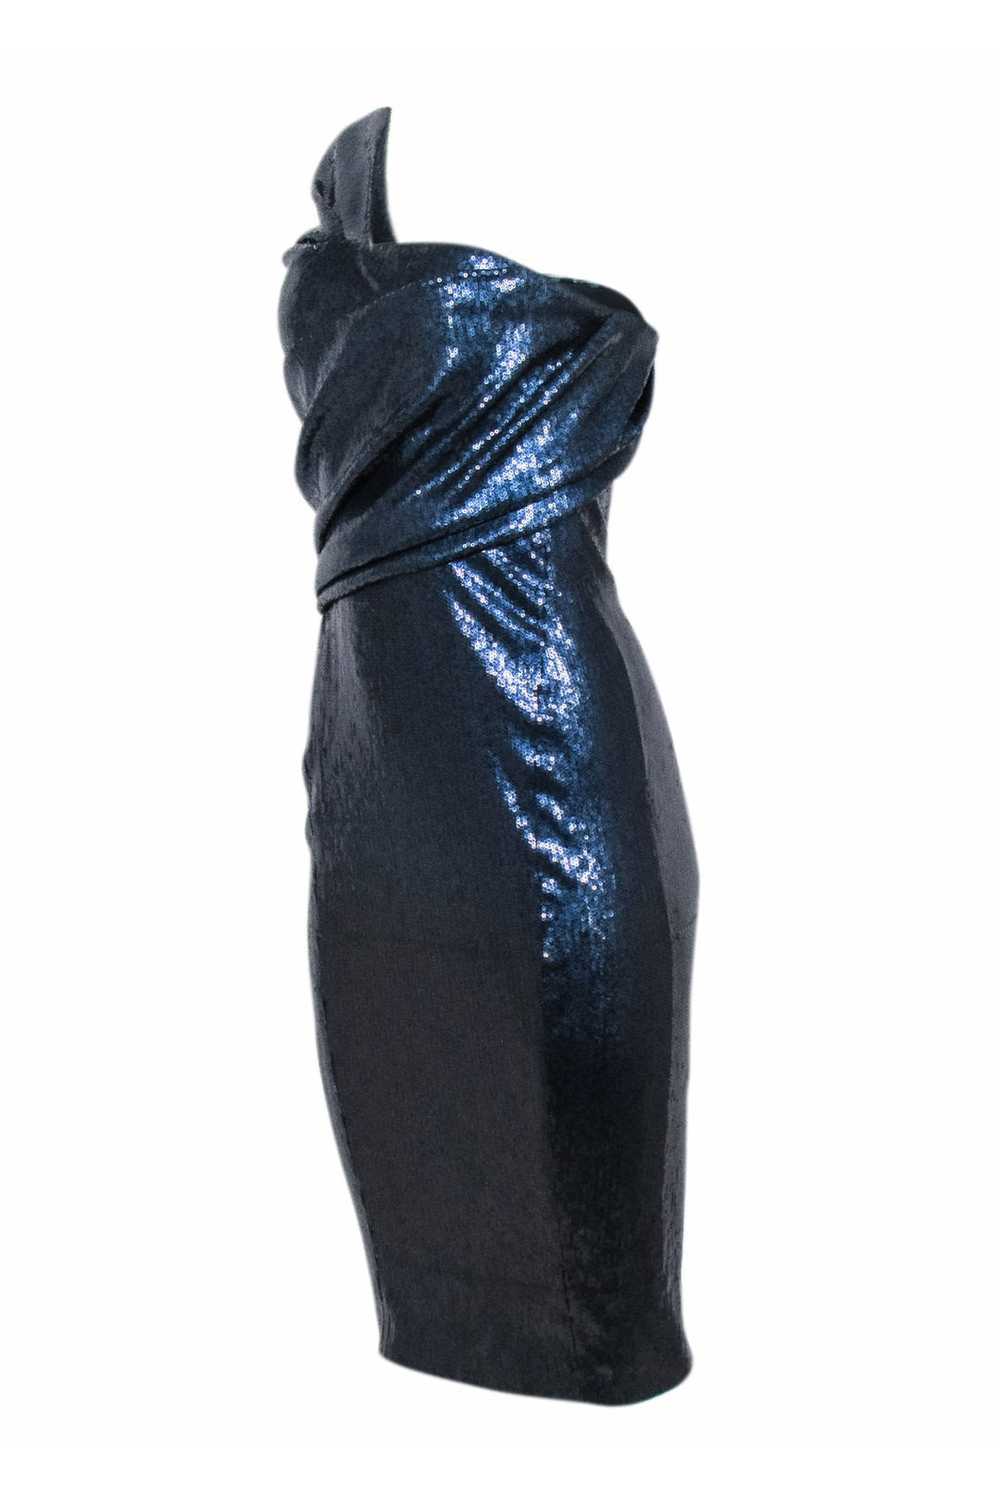 Donna Karan - Navy Sequins One Shoulder Dress Sz 6 - image 3